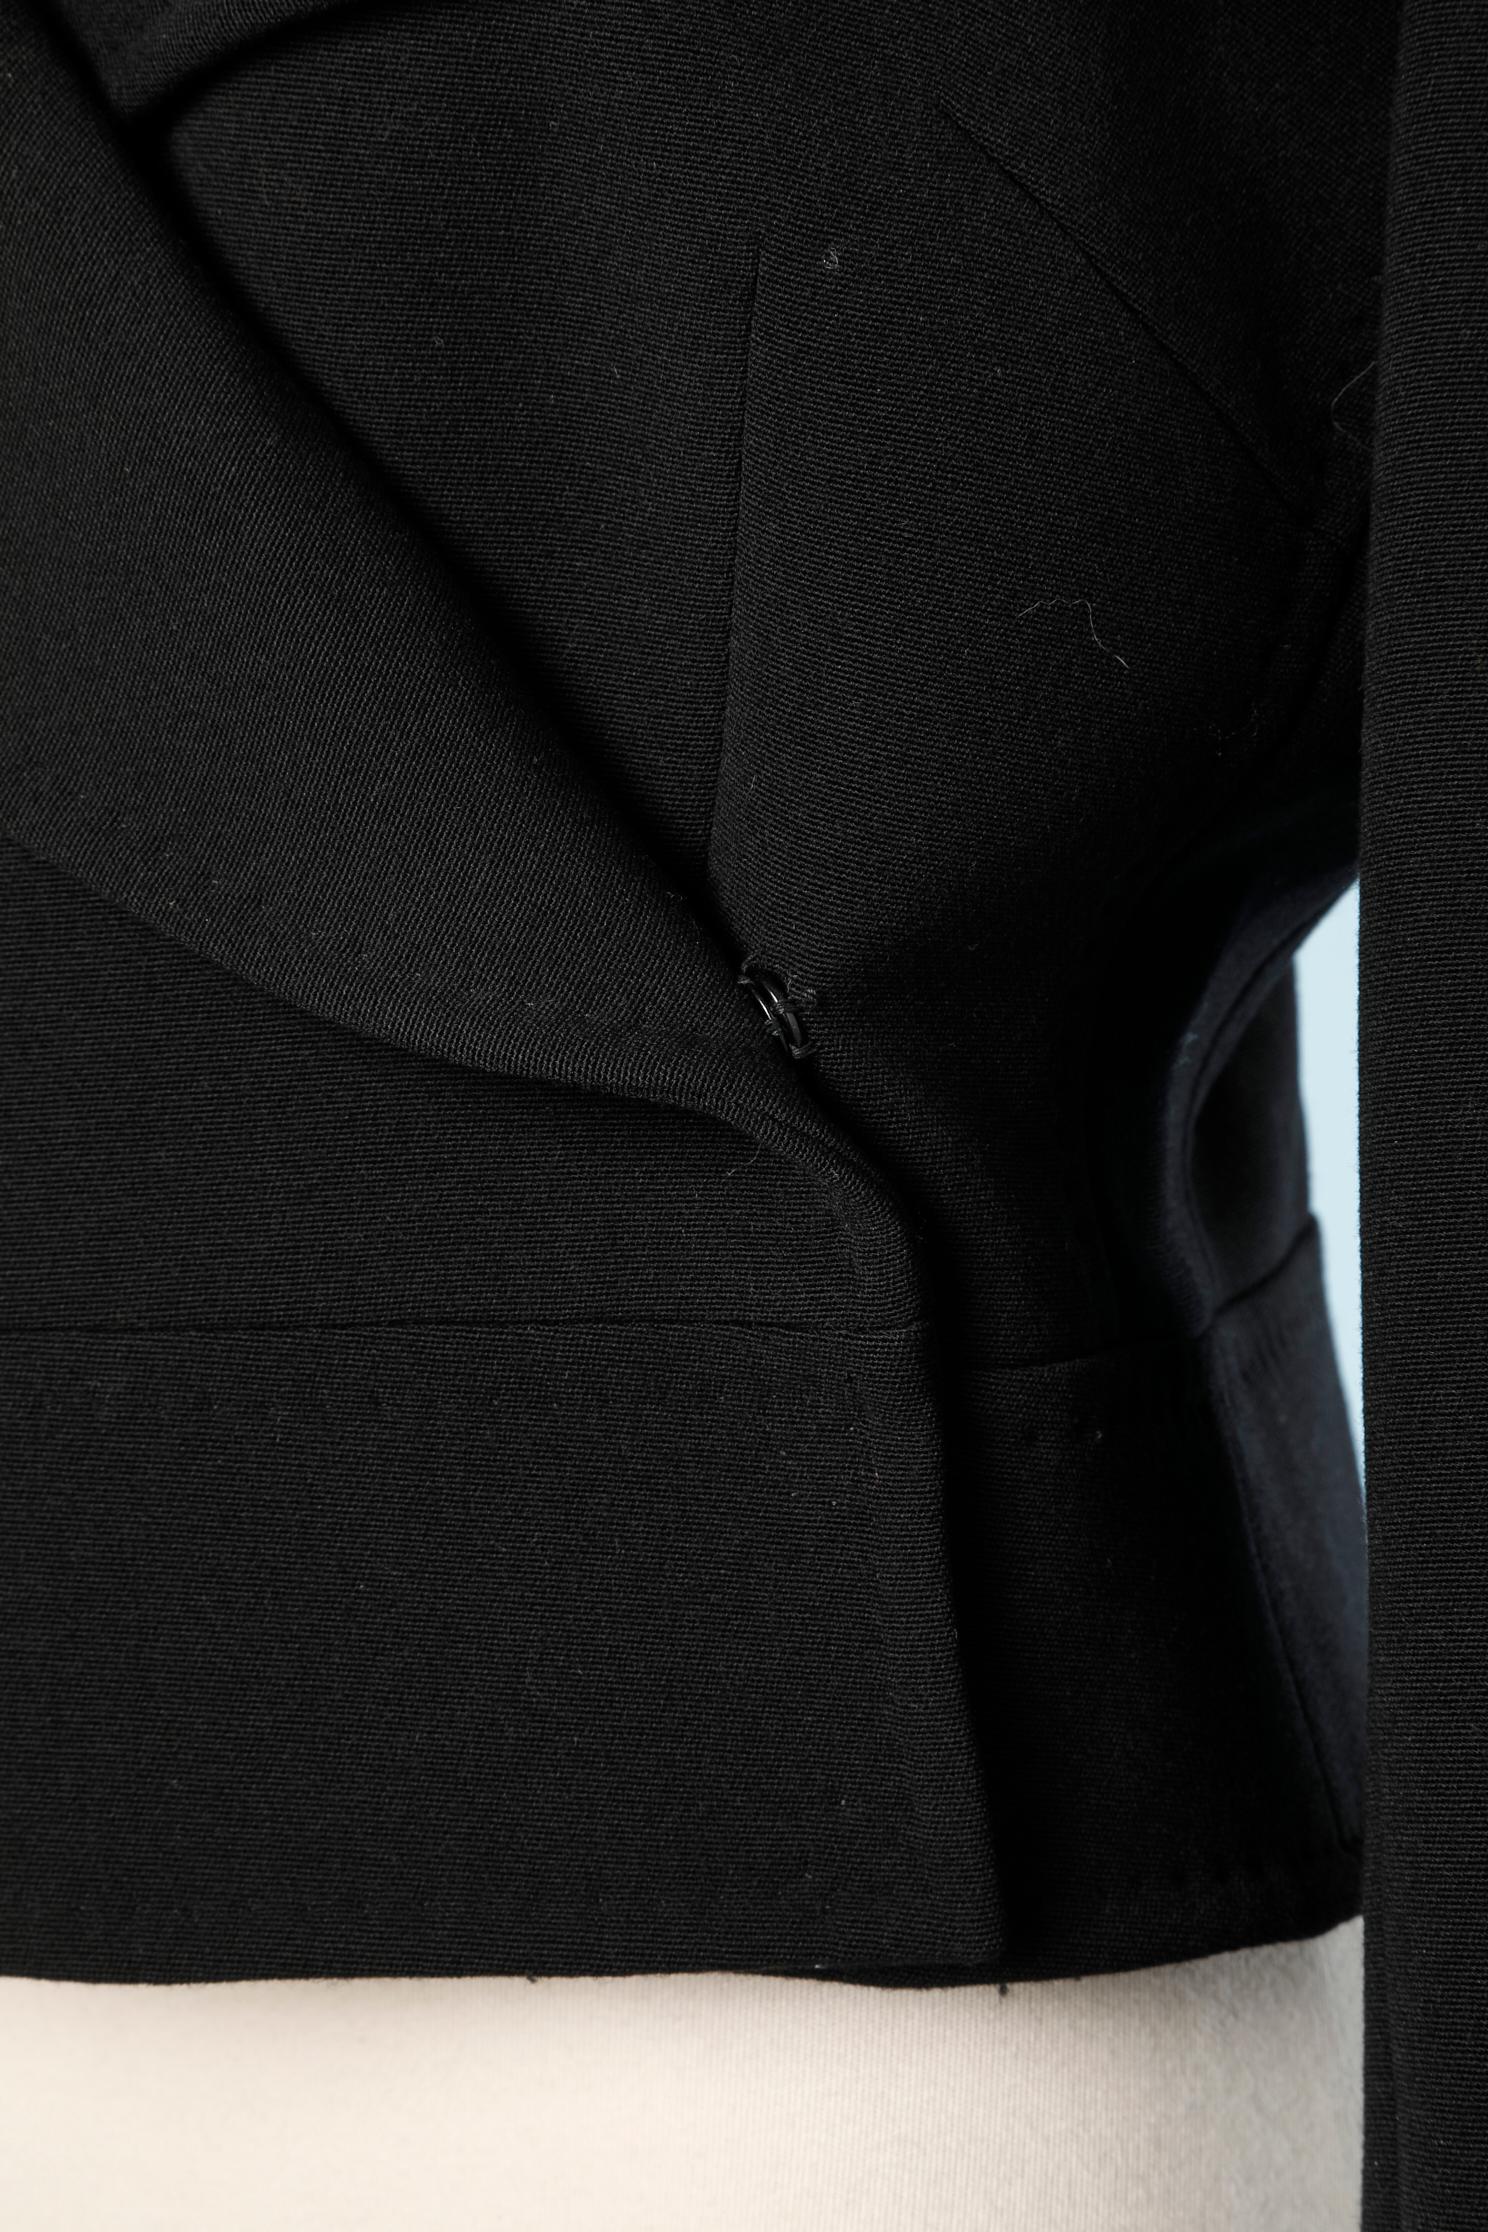 Veste courte en laine noire à double boutonnage, doublée d'une marque rose. 
98% laine, 2% polyamide
TAILLE 44( It) 40 (Fr) 10 (Us)